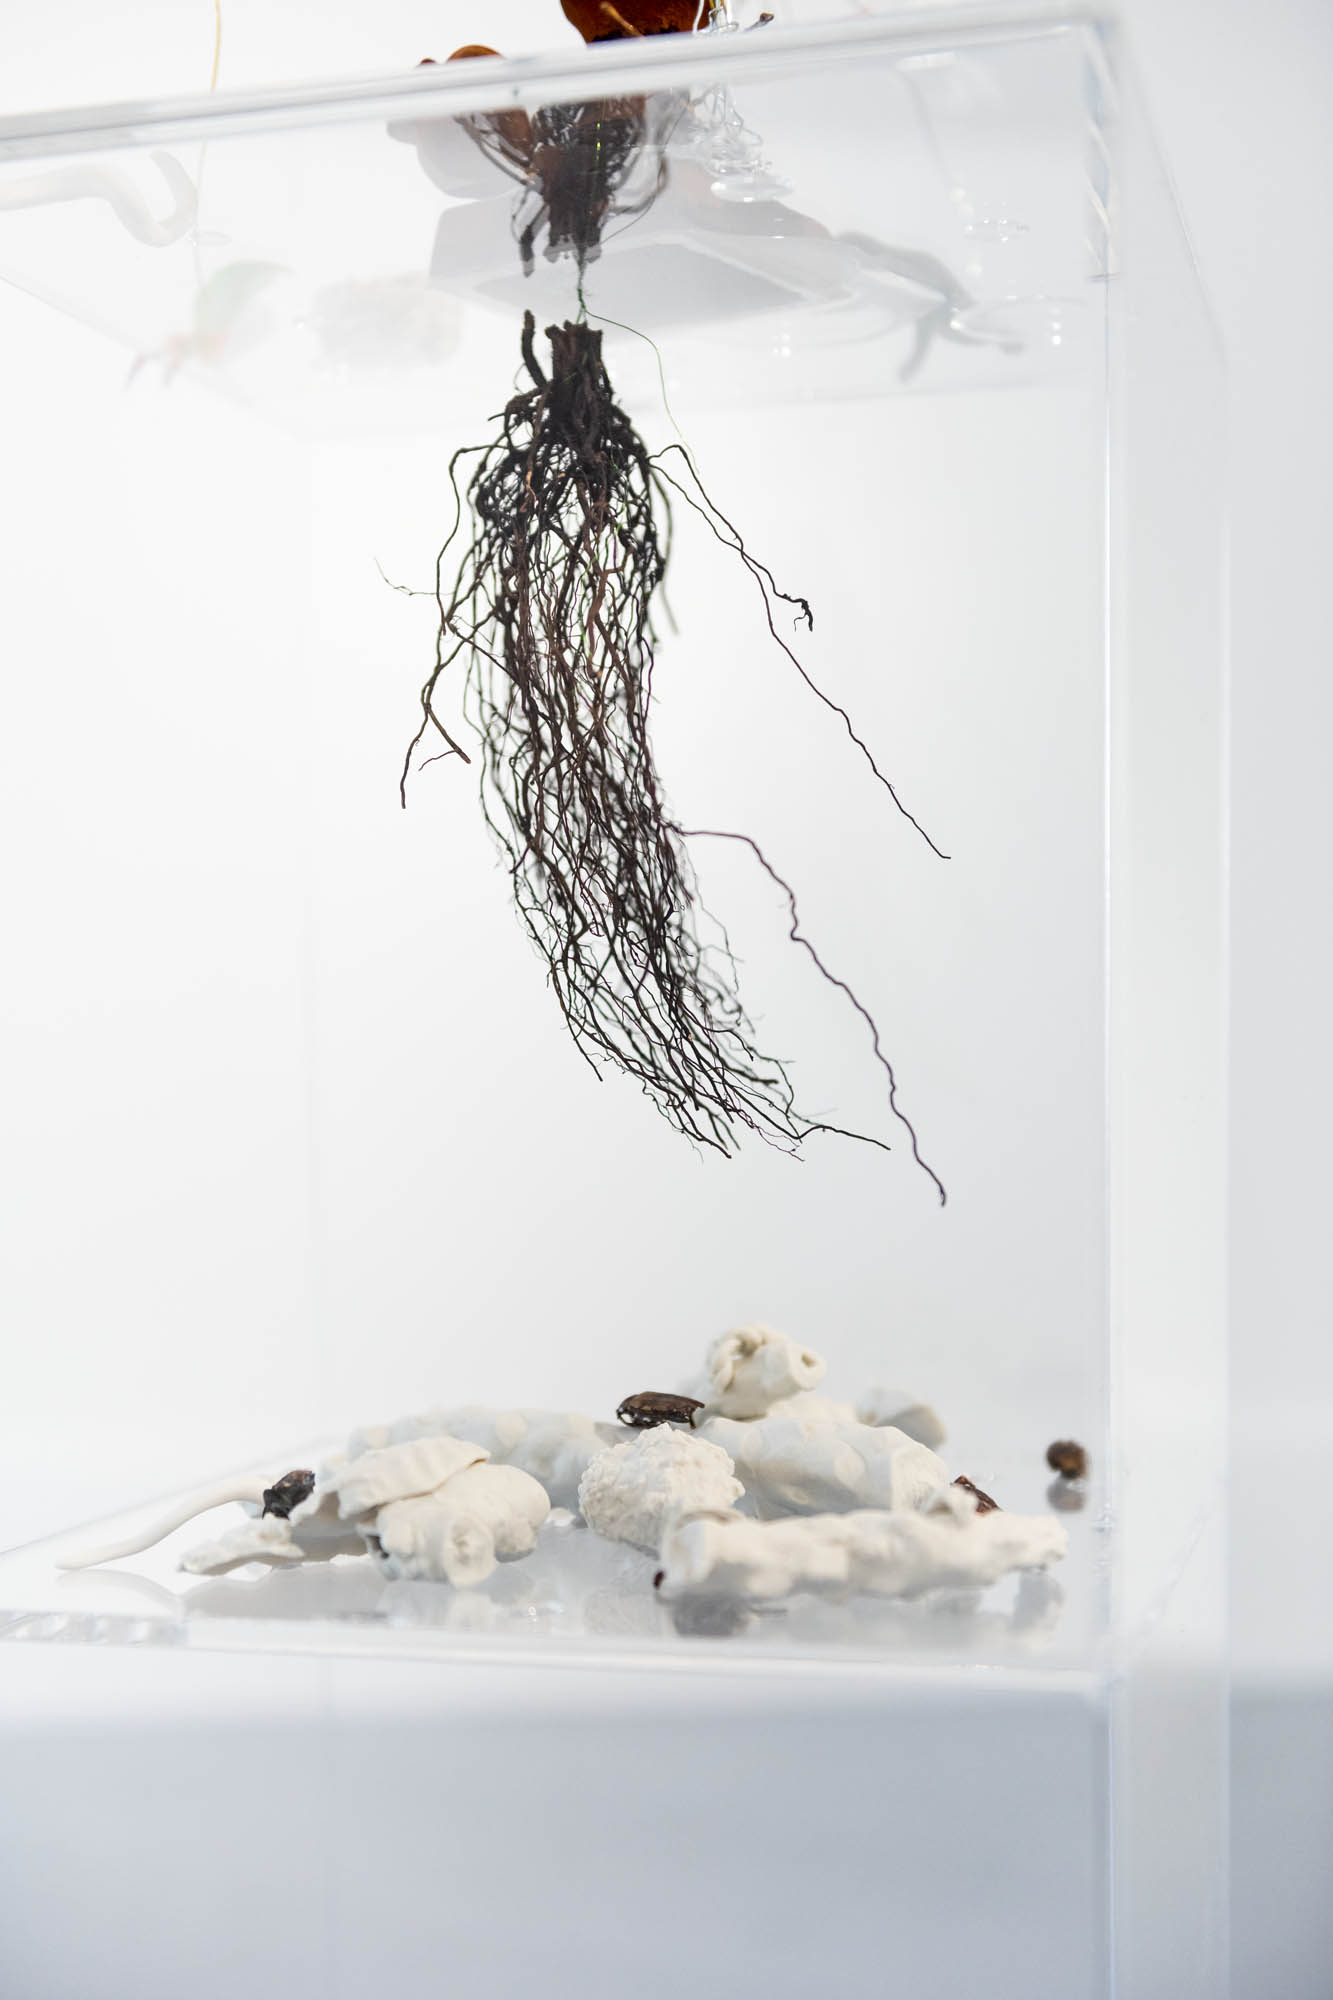 Exhibition view: Eike Eplik "Biomass – Ghost In the Corner"